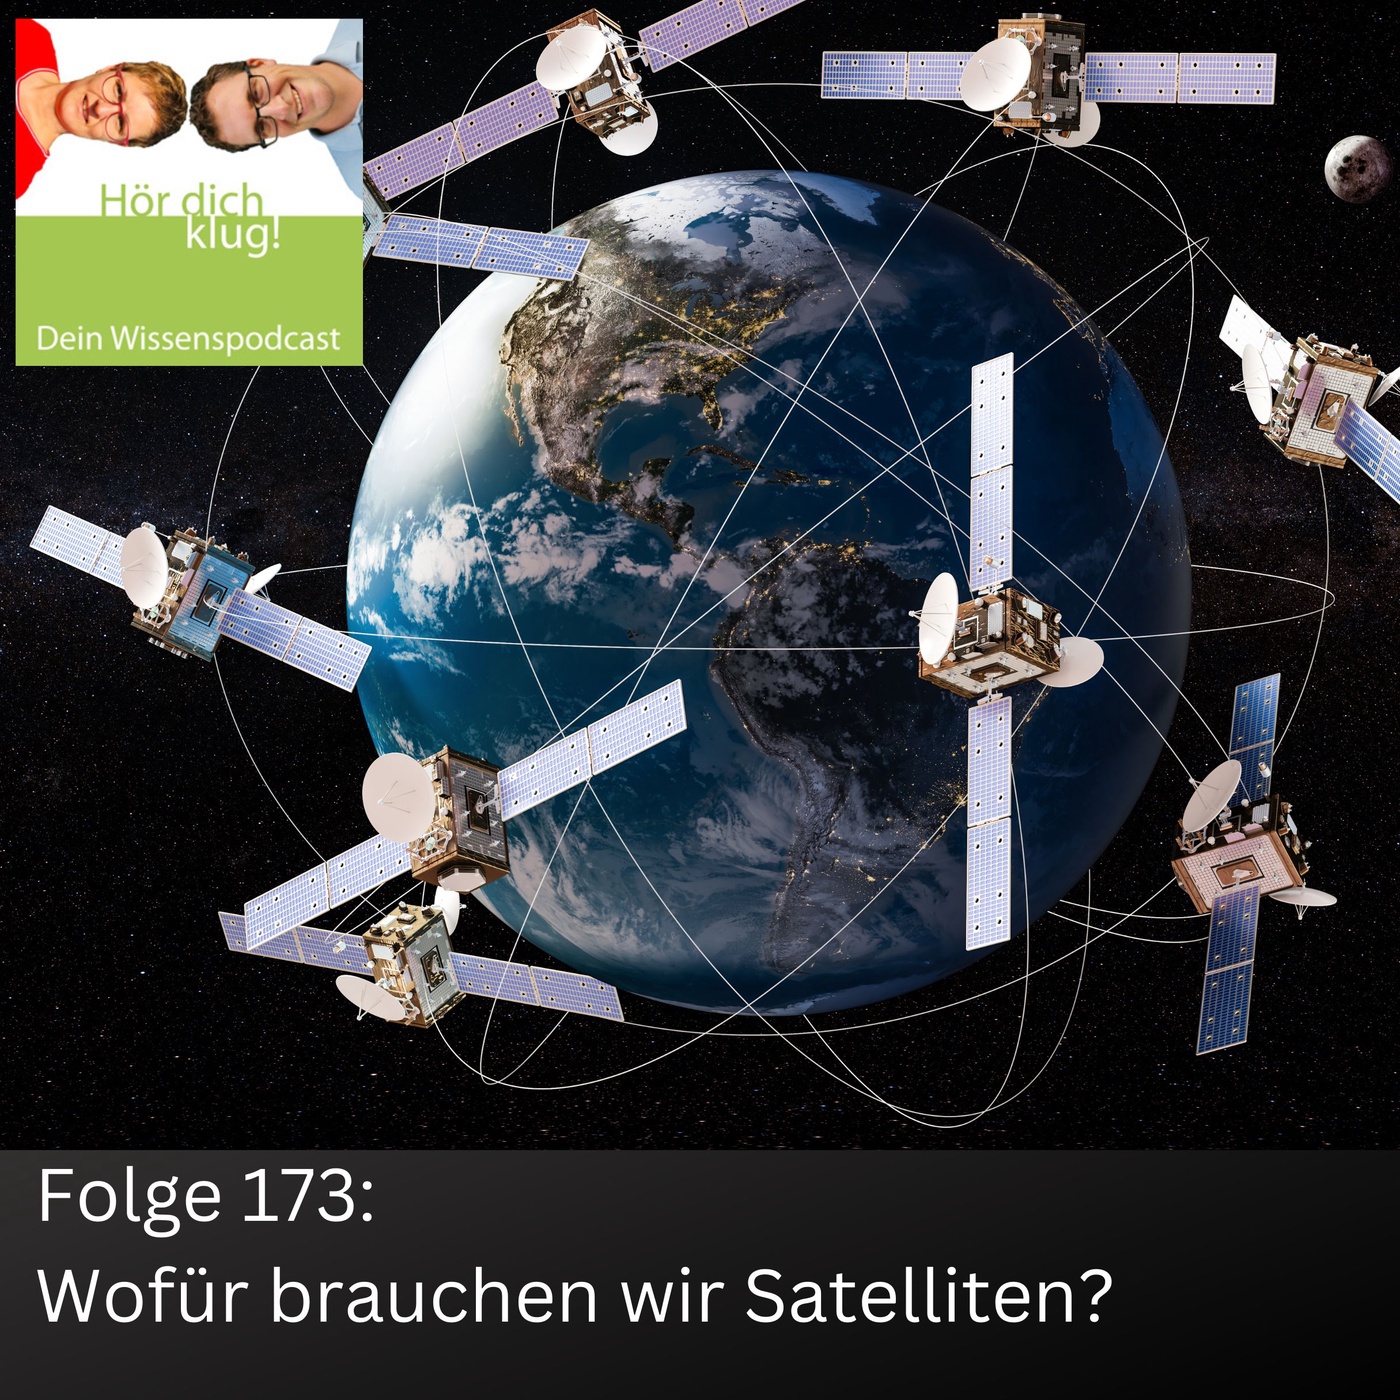 Wofür brauchen wir Satelliten?